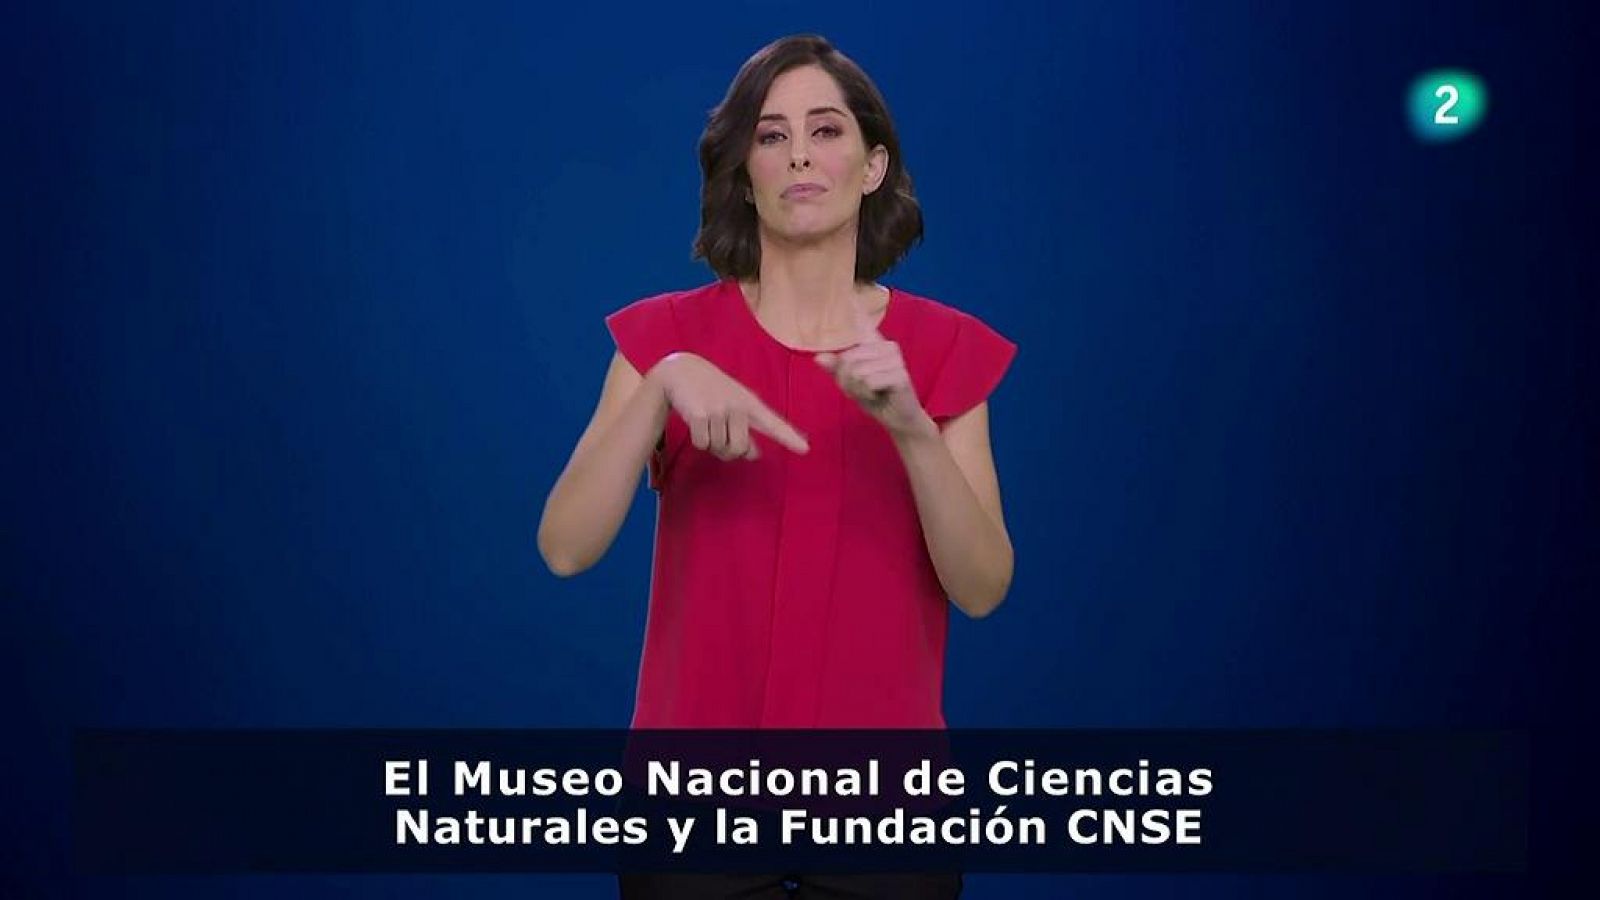 Ciencia: "Ciencia Signada" un proyecto del MNCN y la Fundación CNSE